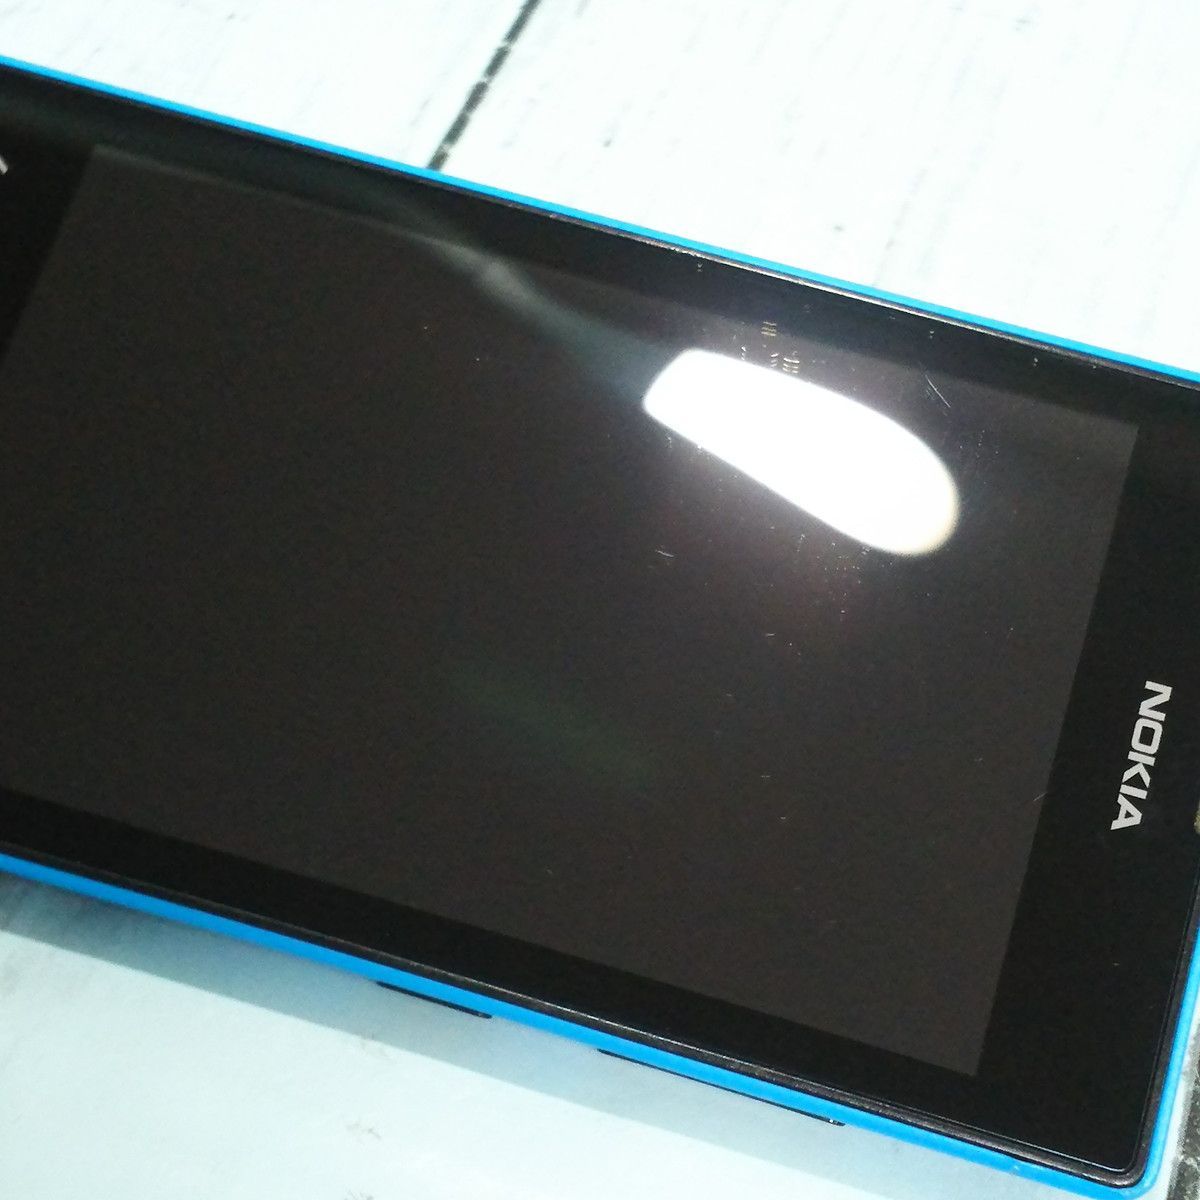 Nokia Lumia 520 ブルー シアン Windows Phone 本体 白ロム SIMロック 